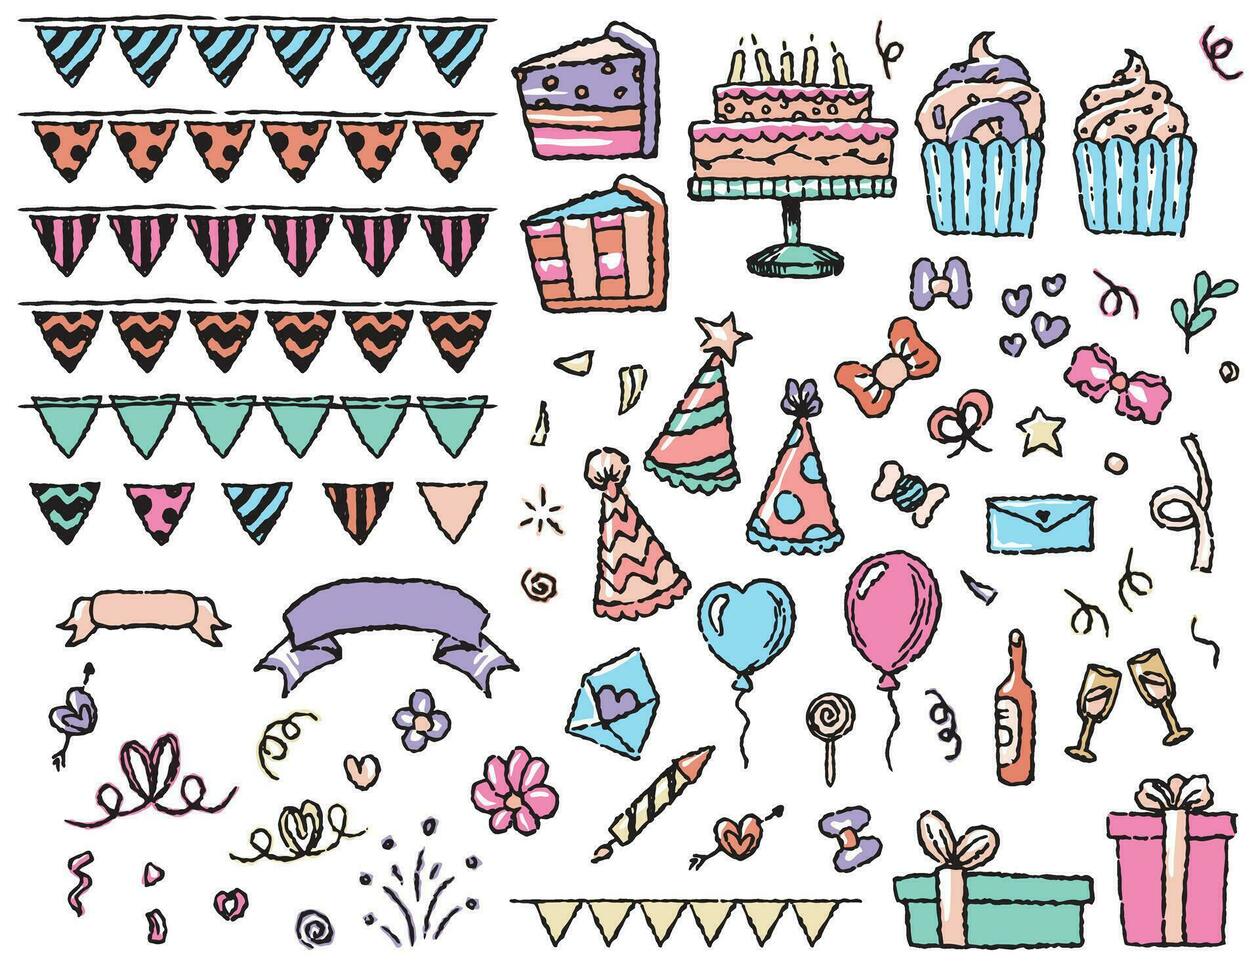 impostato di festivo compleanno elementi, torte, cupcakes, palle, fuochi d'artificio, i regali, bandiere, caramelle. vettore grafica per compleanno, per carta disegno, carta disegno, Stampa. linea stile